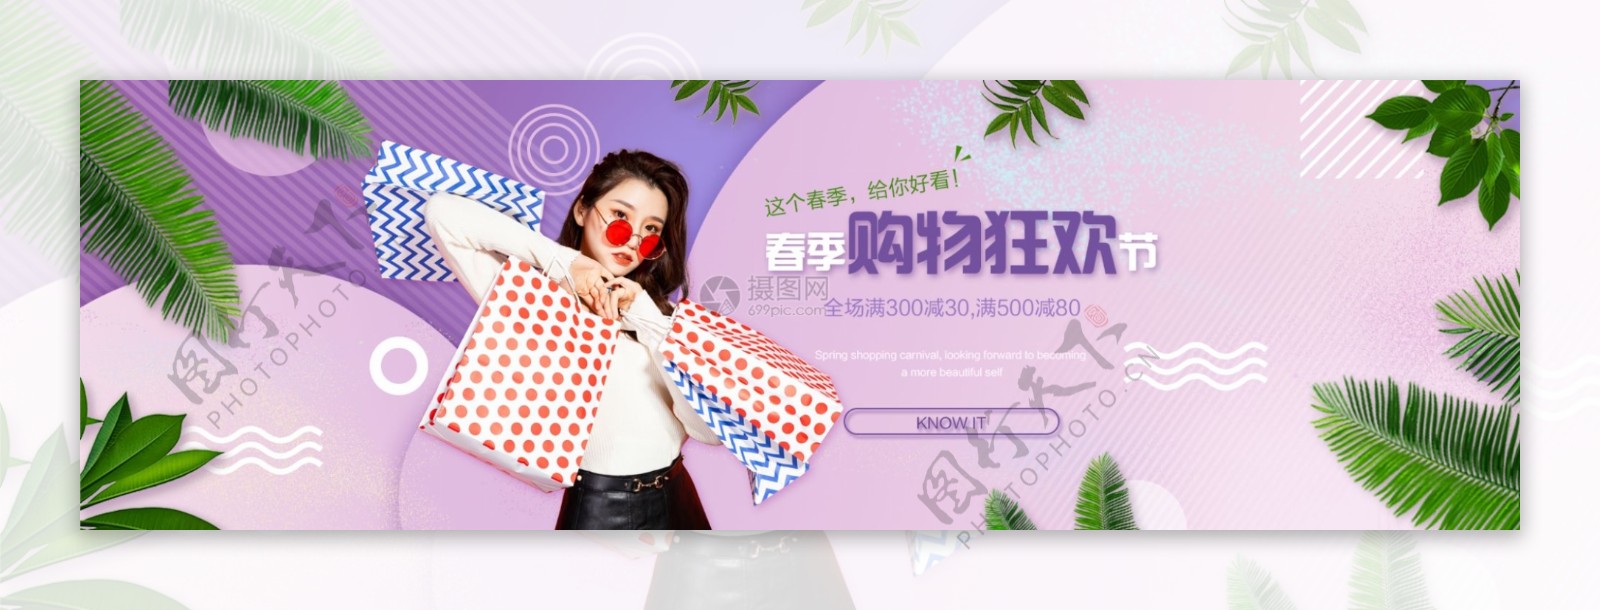 春季购物狂欢节促销淘宝banner